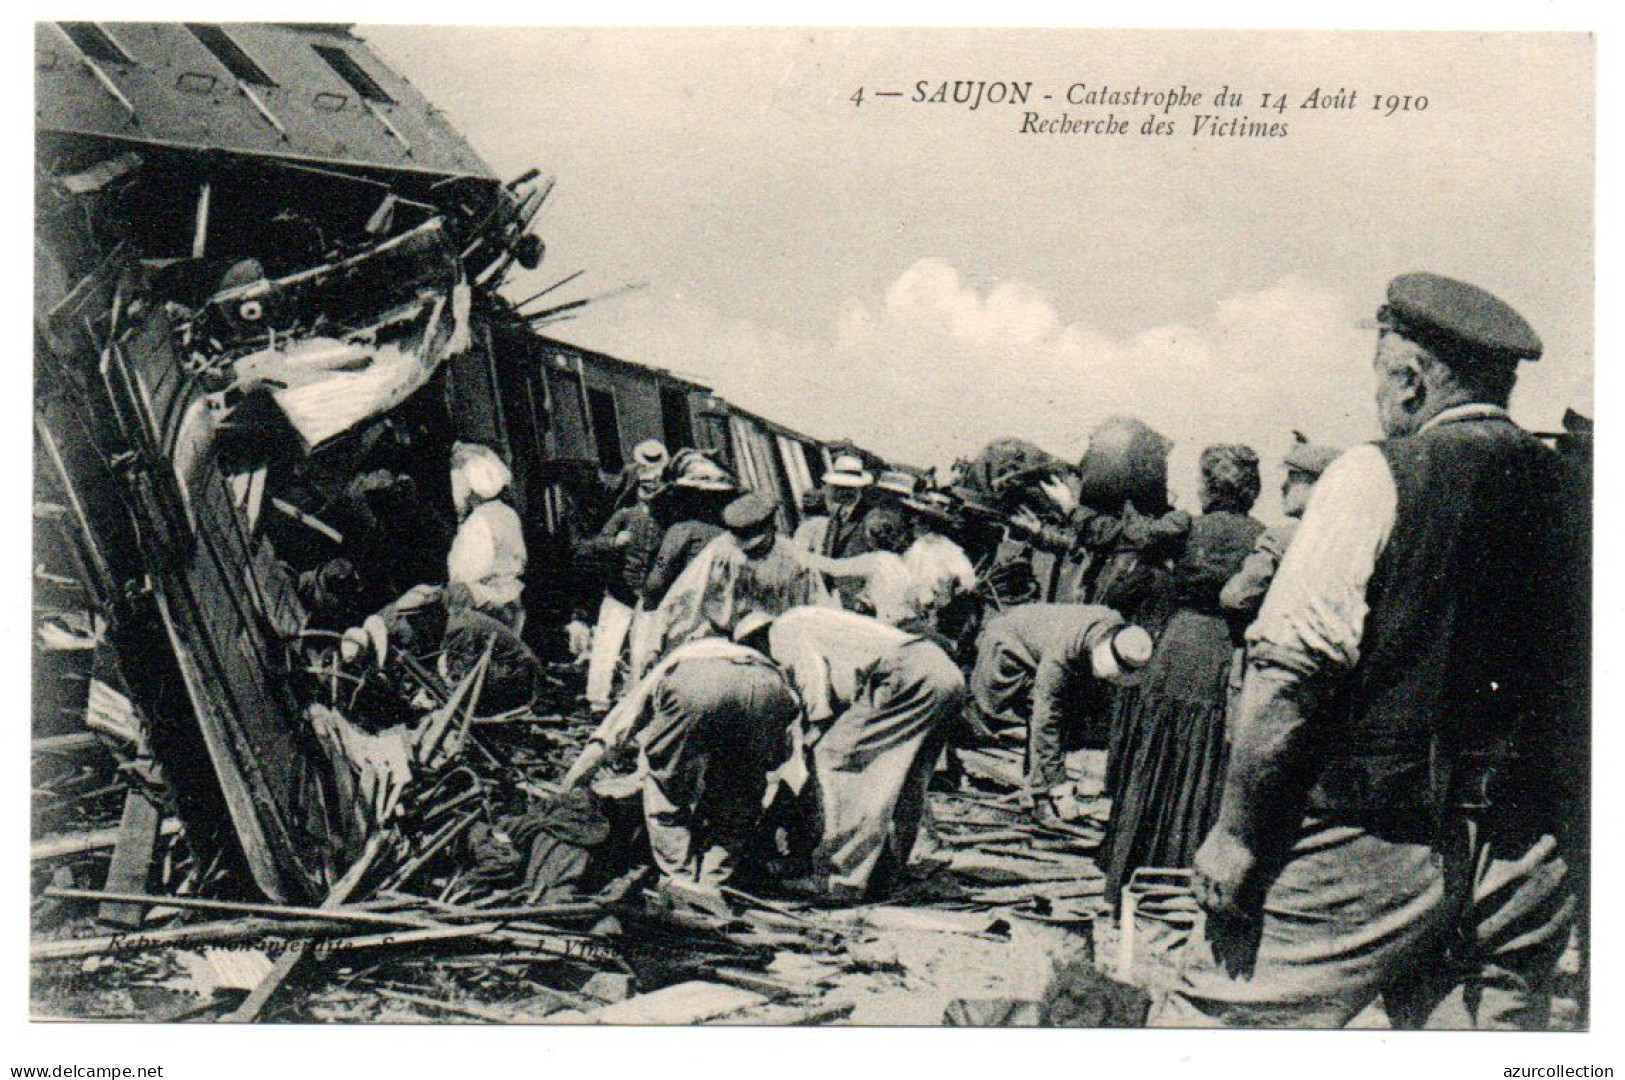 Catastrophe Du 14/08/1910. Recherche Des Victimes - Saujon